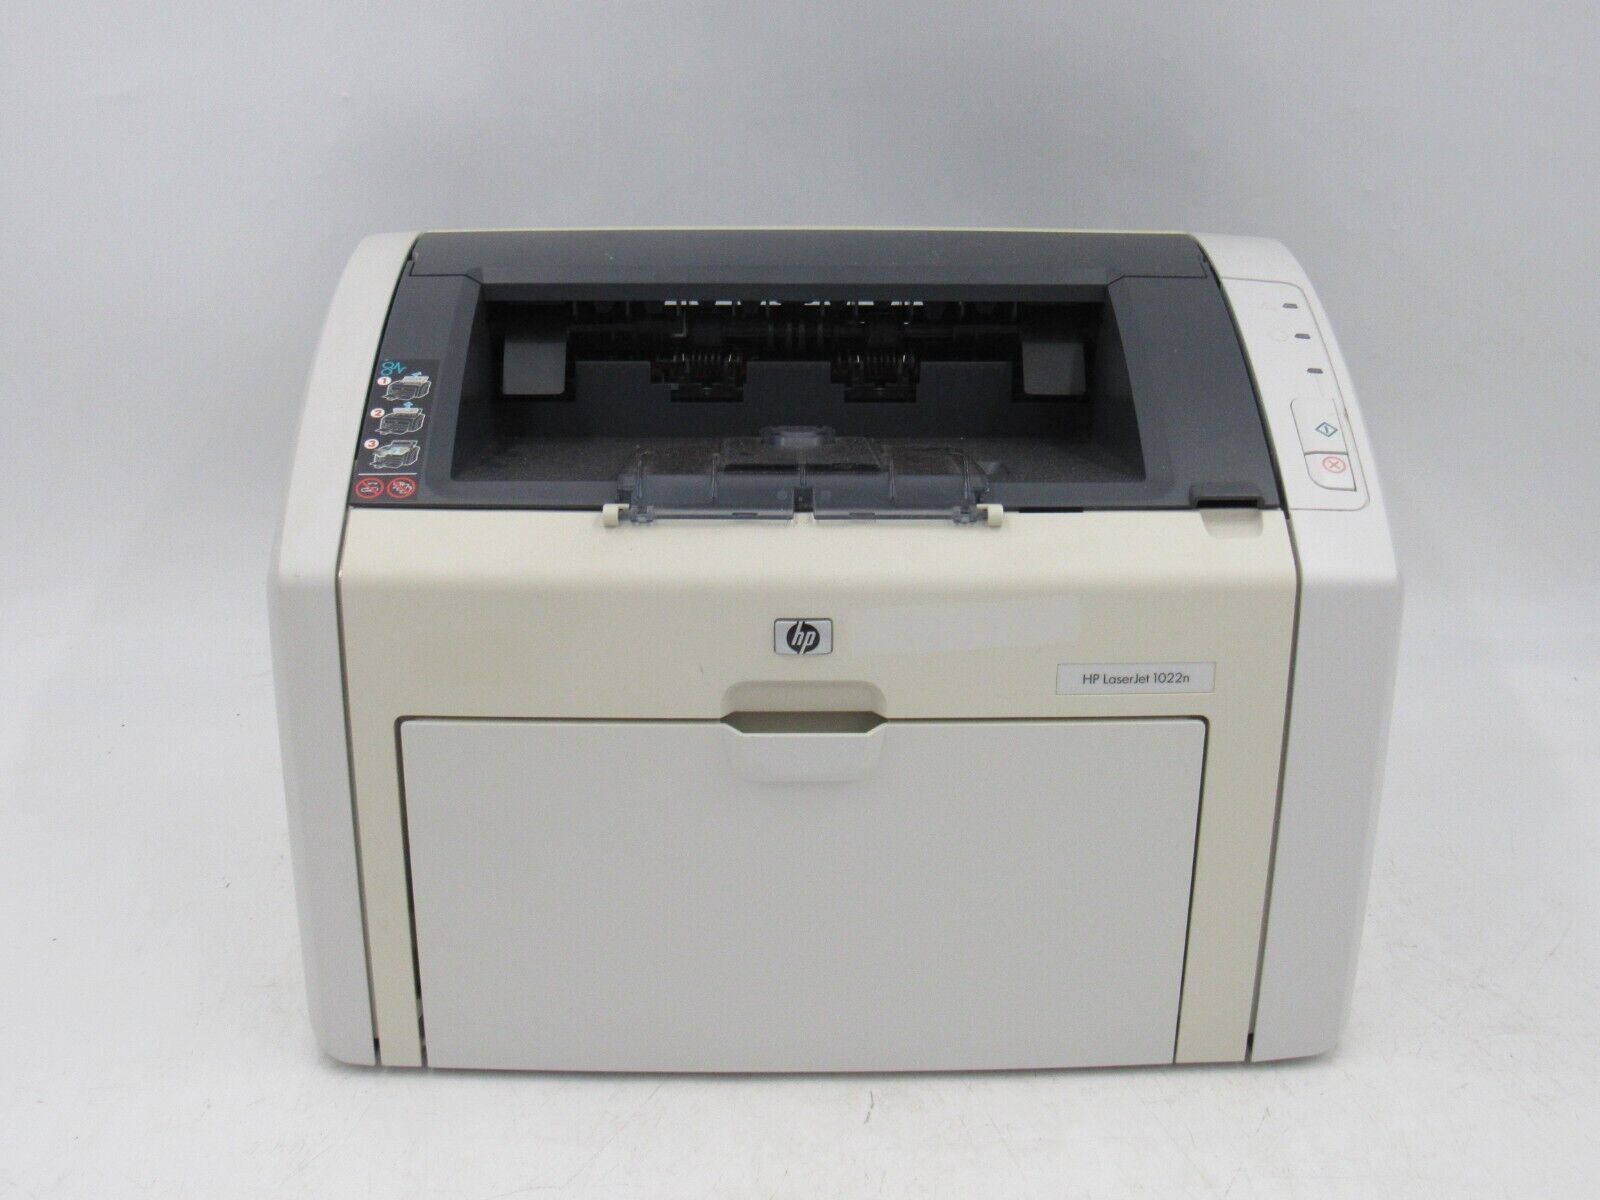 HP LaserJet 1022n Standard Monochrome Laser Printer With Toner TESTED 